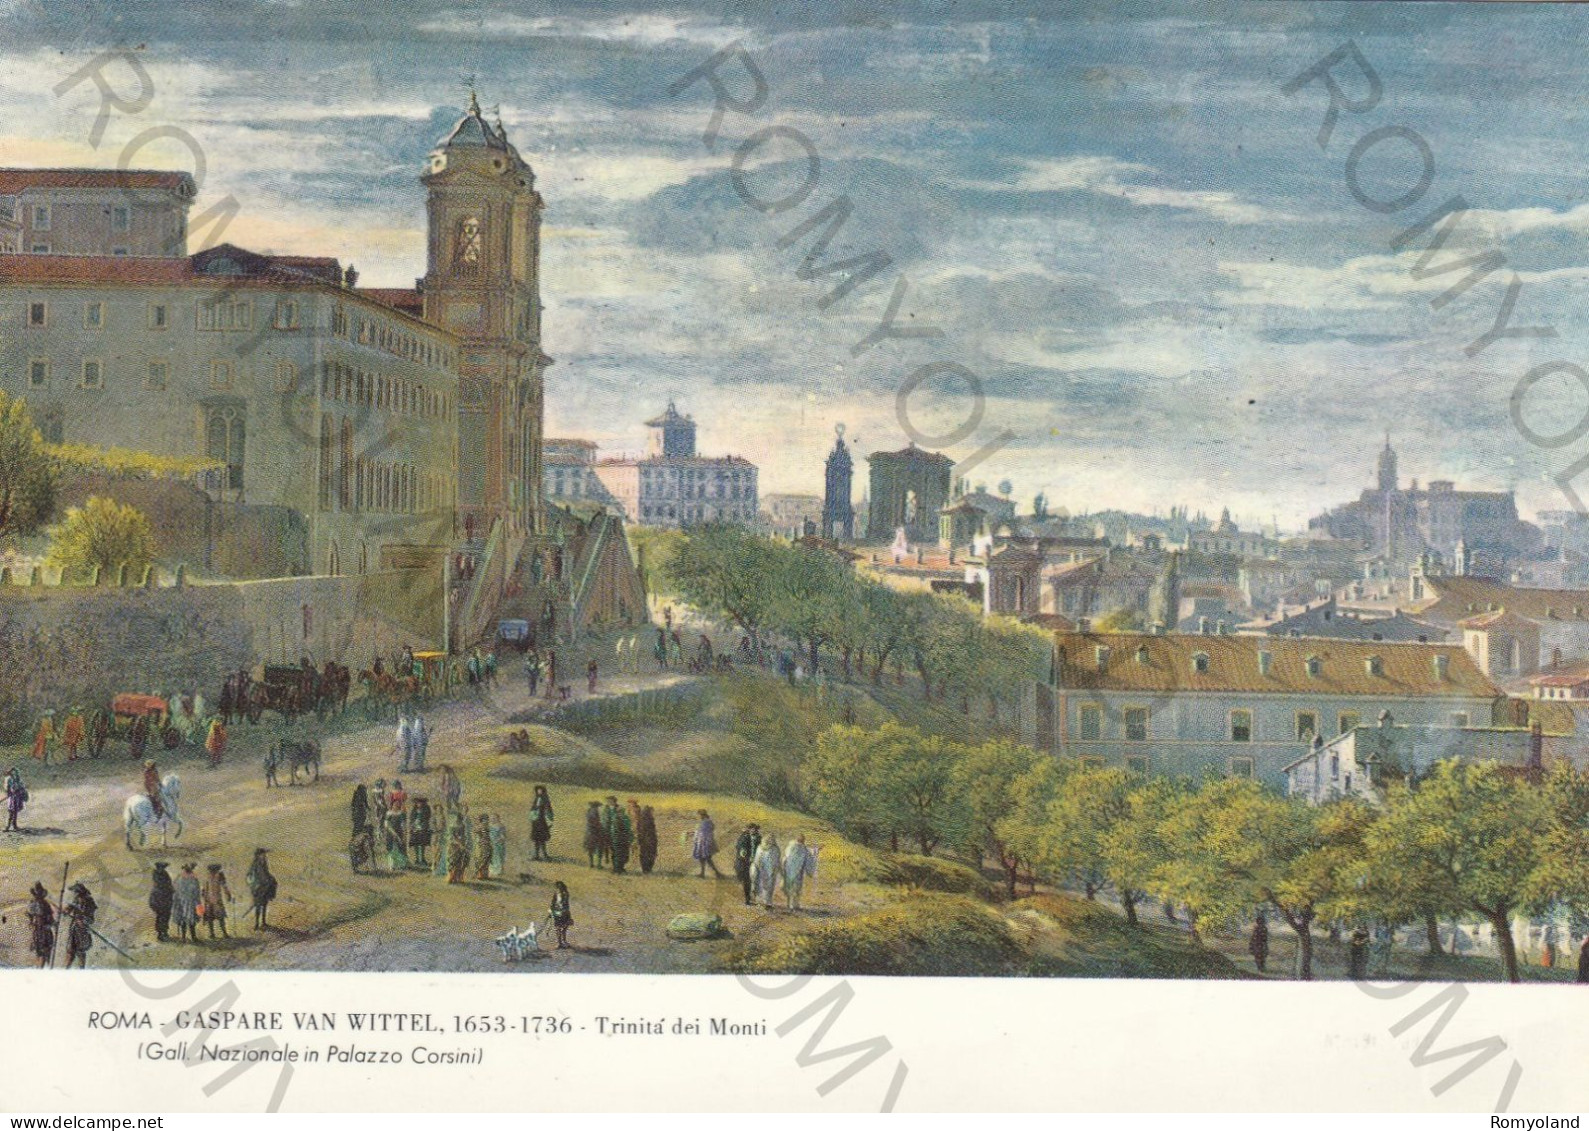 CARTOLINA  ROMA,LAZIO-GALL.NAZIONALE IN PALAZZO CORSINI-GASPARE VAN WITTEL 1653-1736 TRINITA DEI MONTI-NON VIAGGIATA - Exposiciones